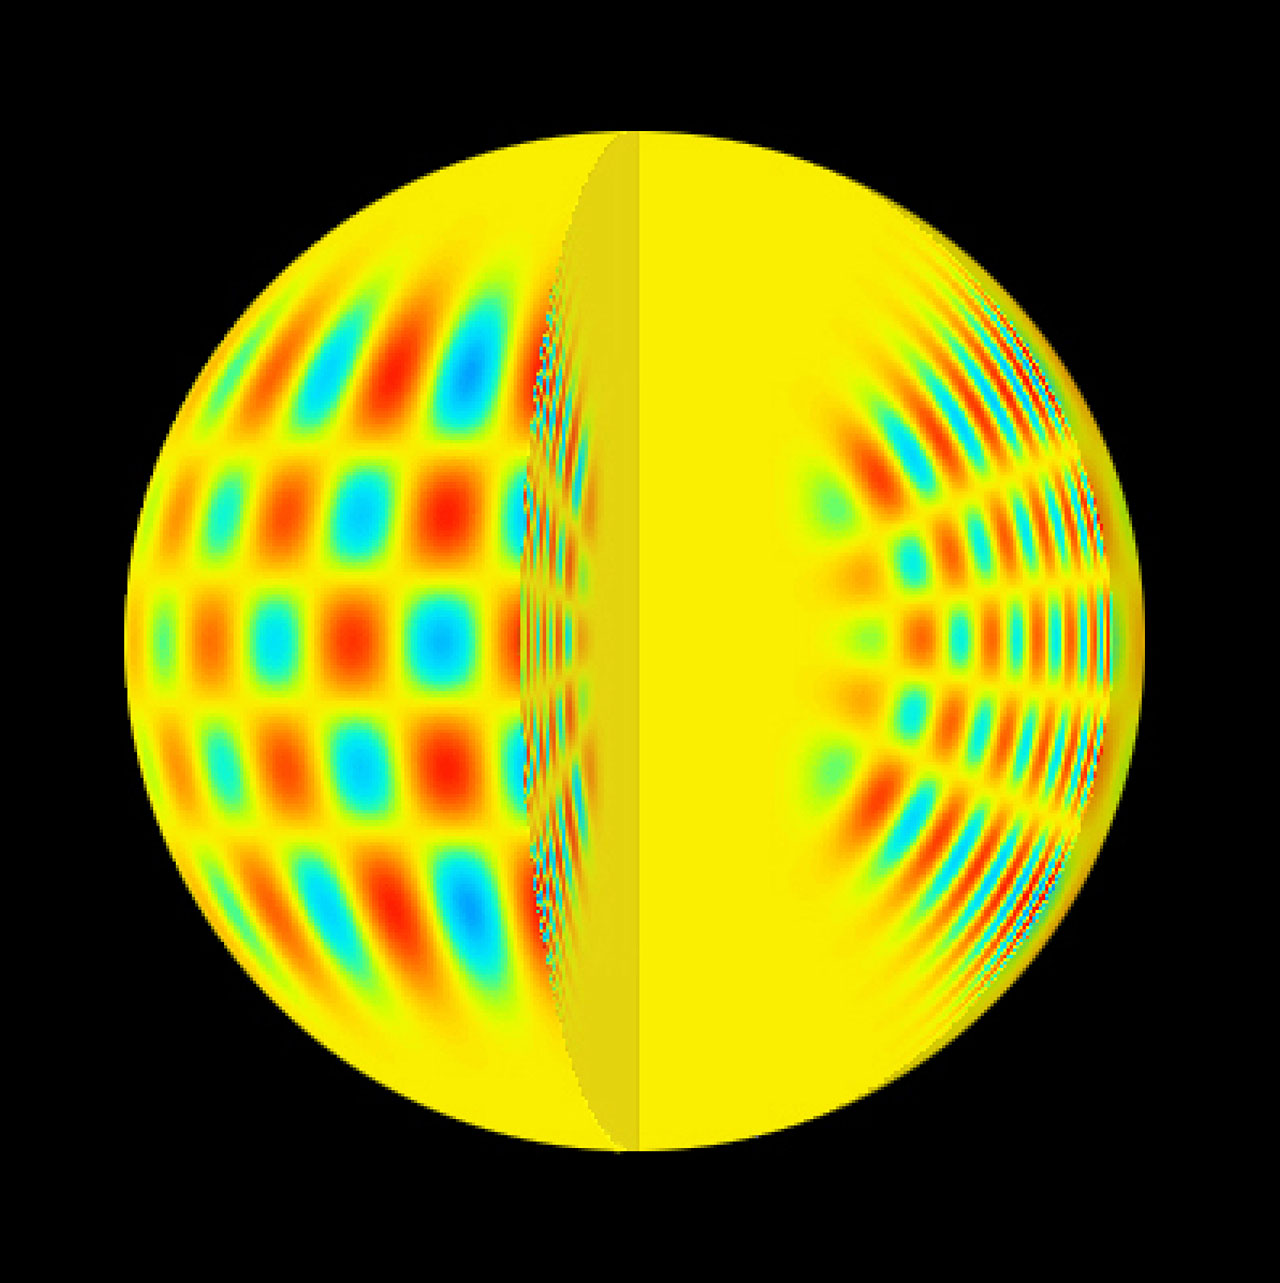 Representación de las ondas acústicas en una estrella. Fuente: ESO.